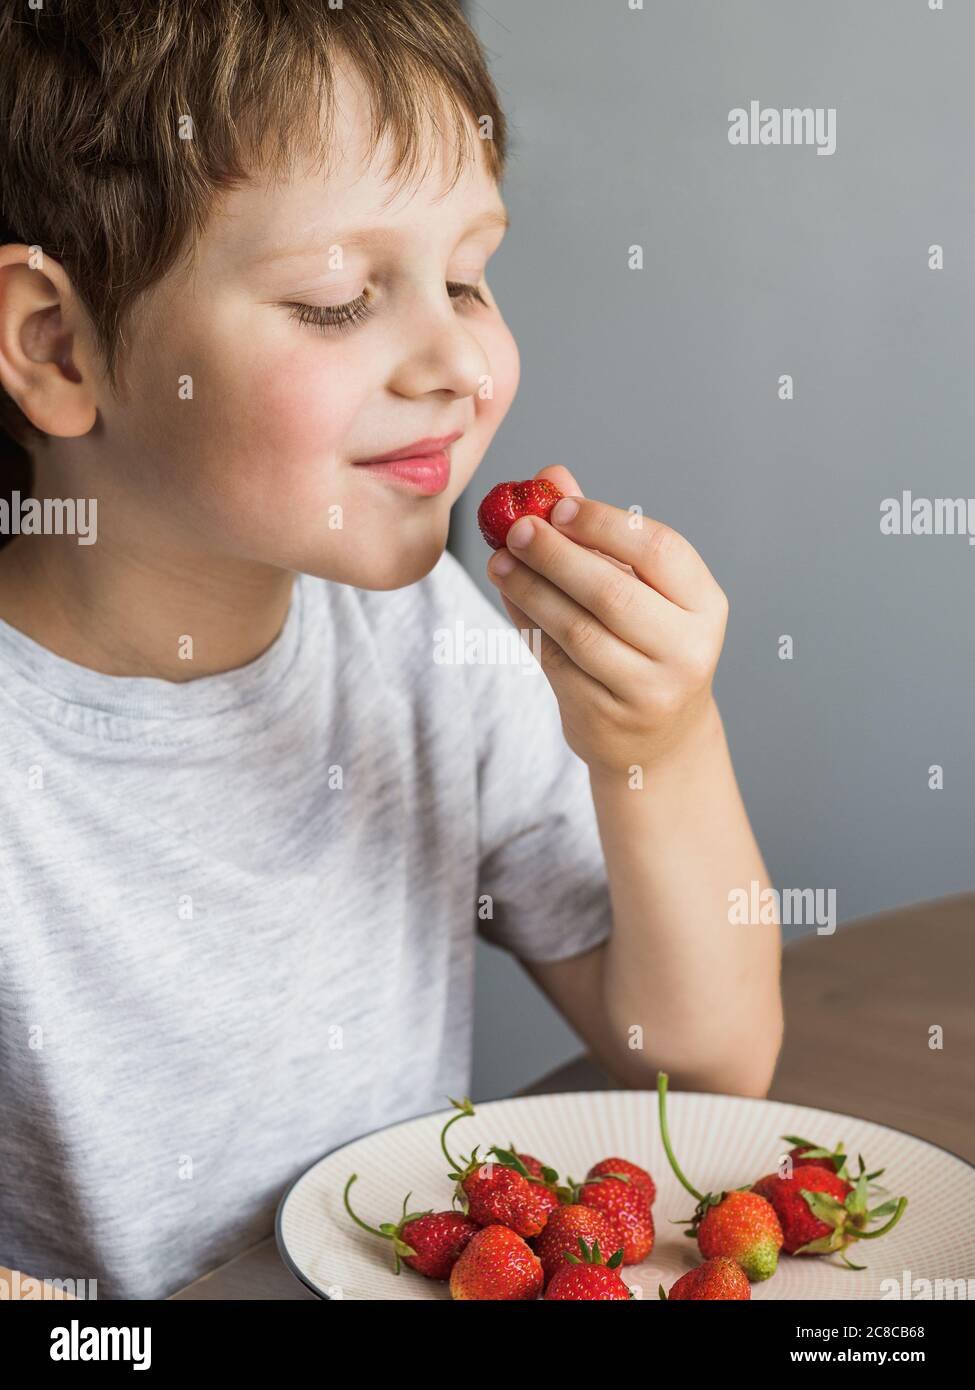 Un garçon de quatre ans mange des fraises fraîches avec de la relish. Un enfant souriant mange des fraises bio à la table de la cuisine. Verticale Banque D'Images